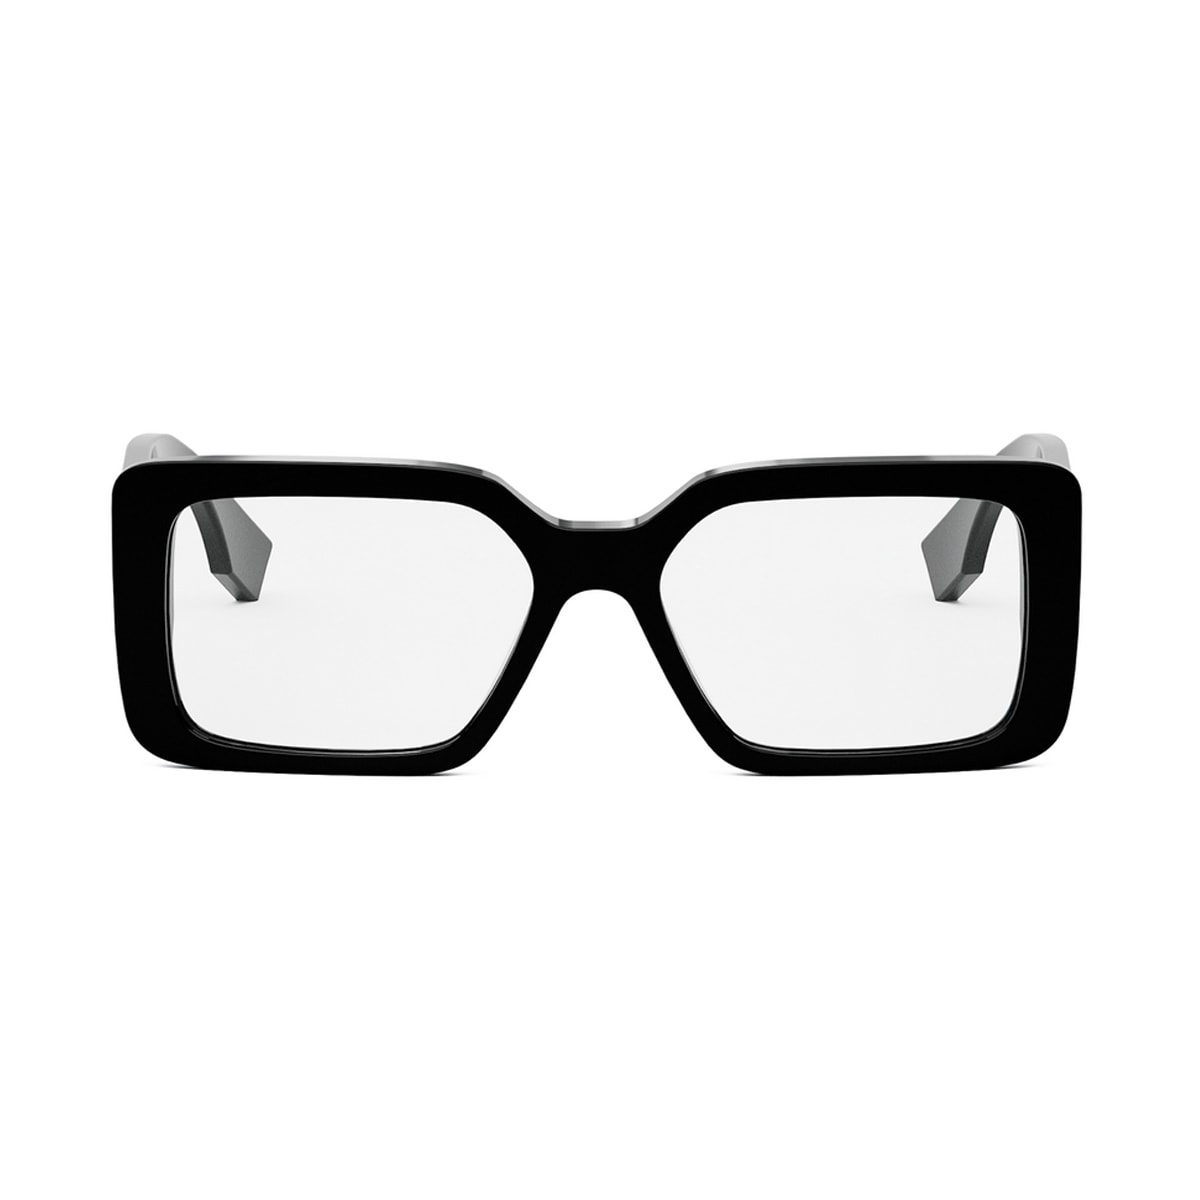 Fe50072i 001 Glasses